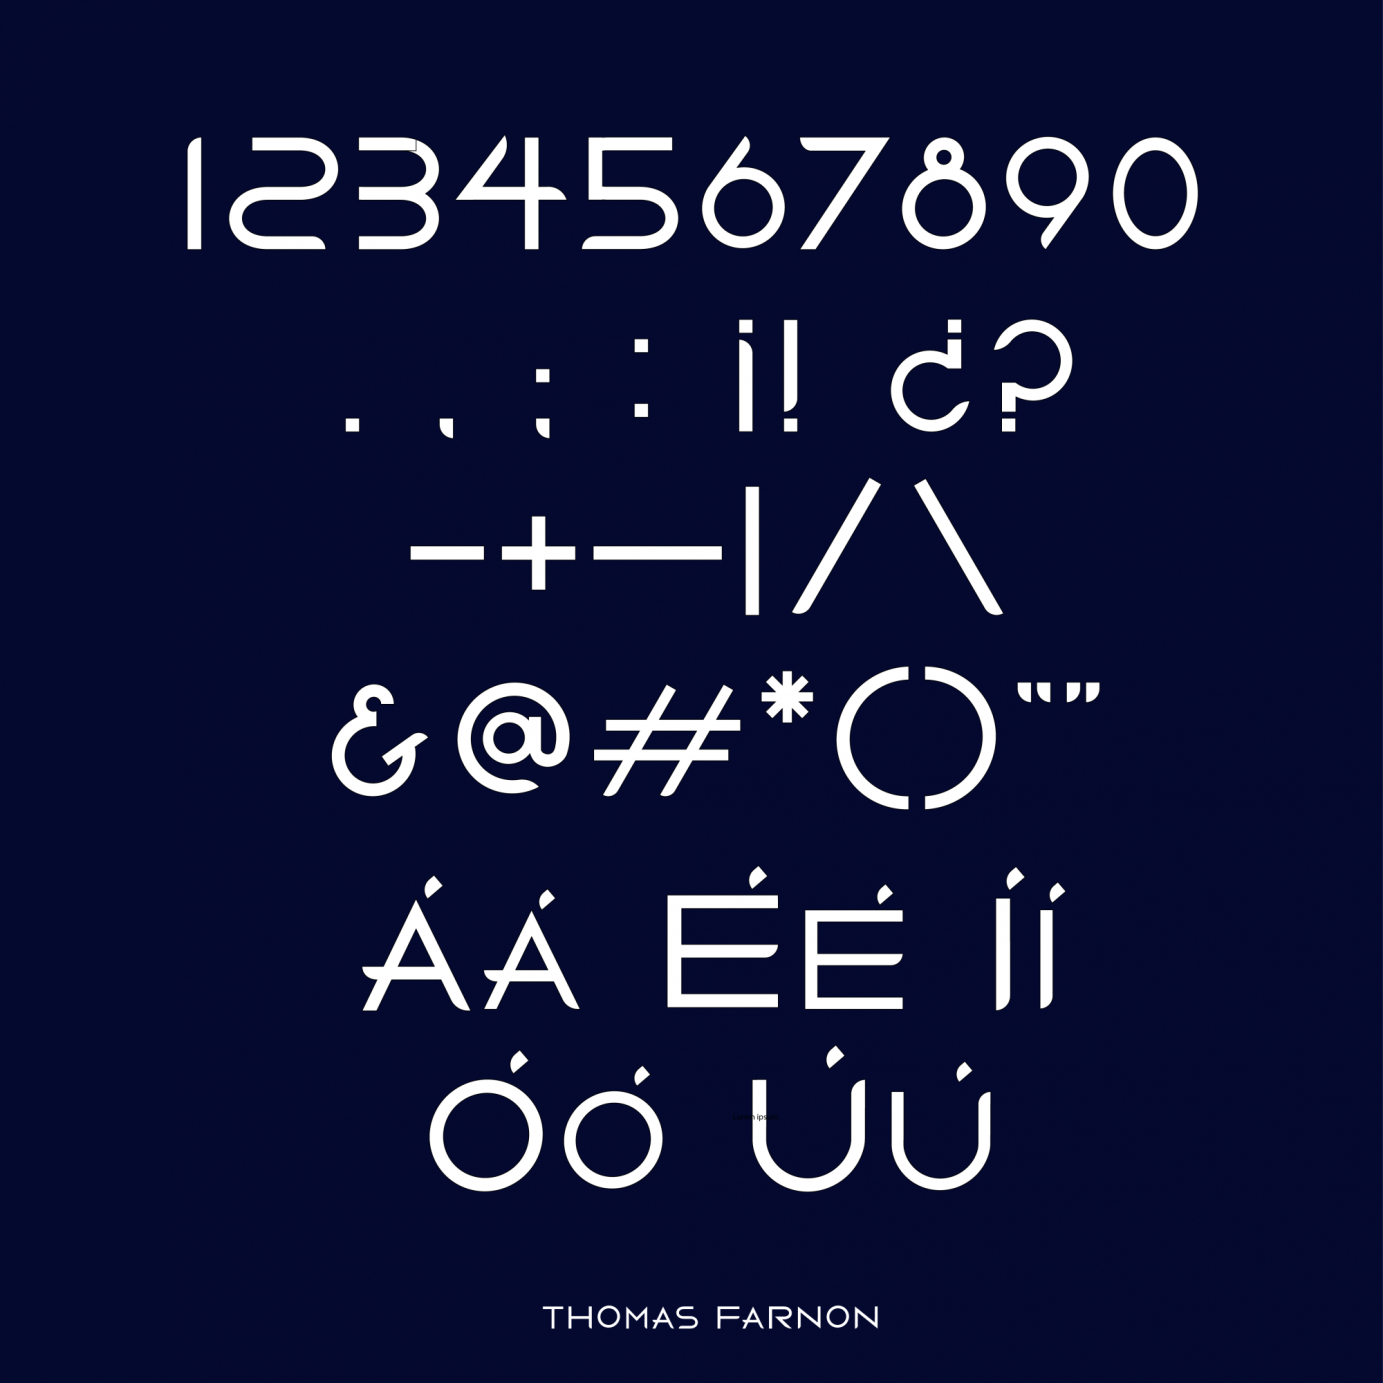 THOMAS FARNON | Logo & Typography Design